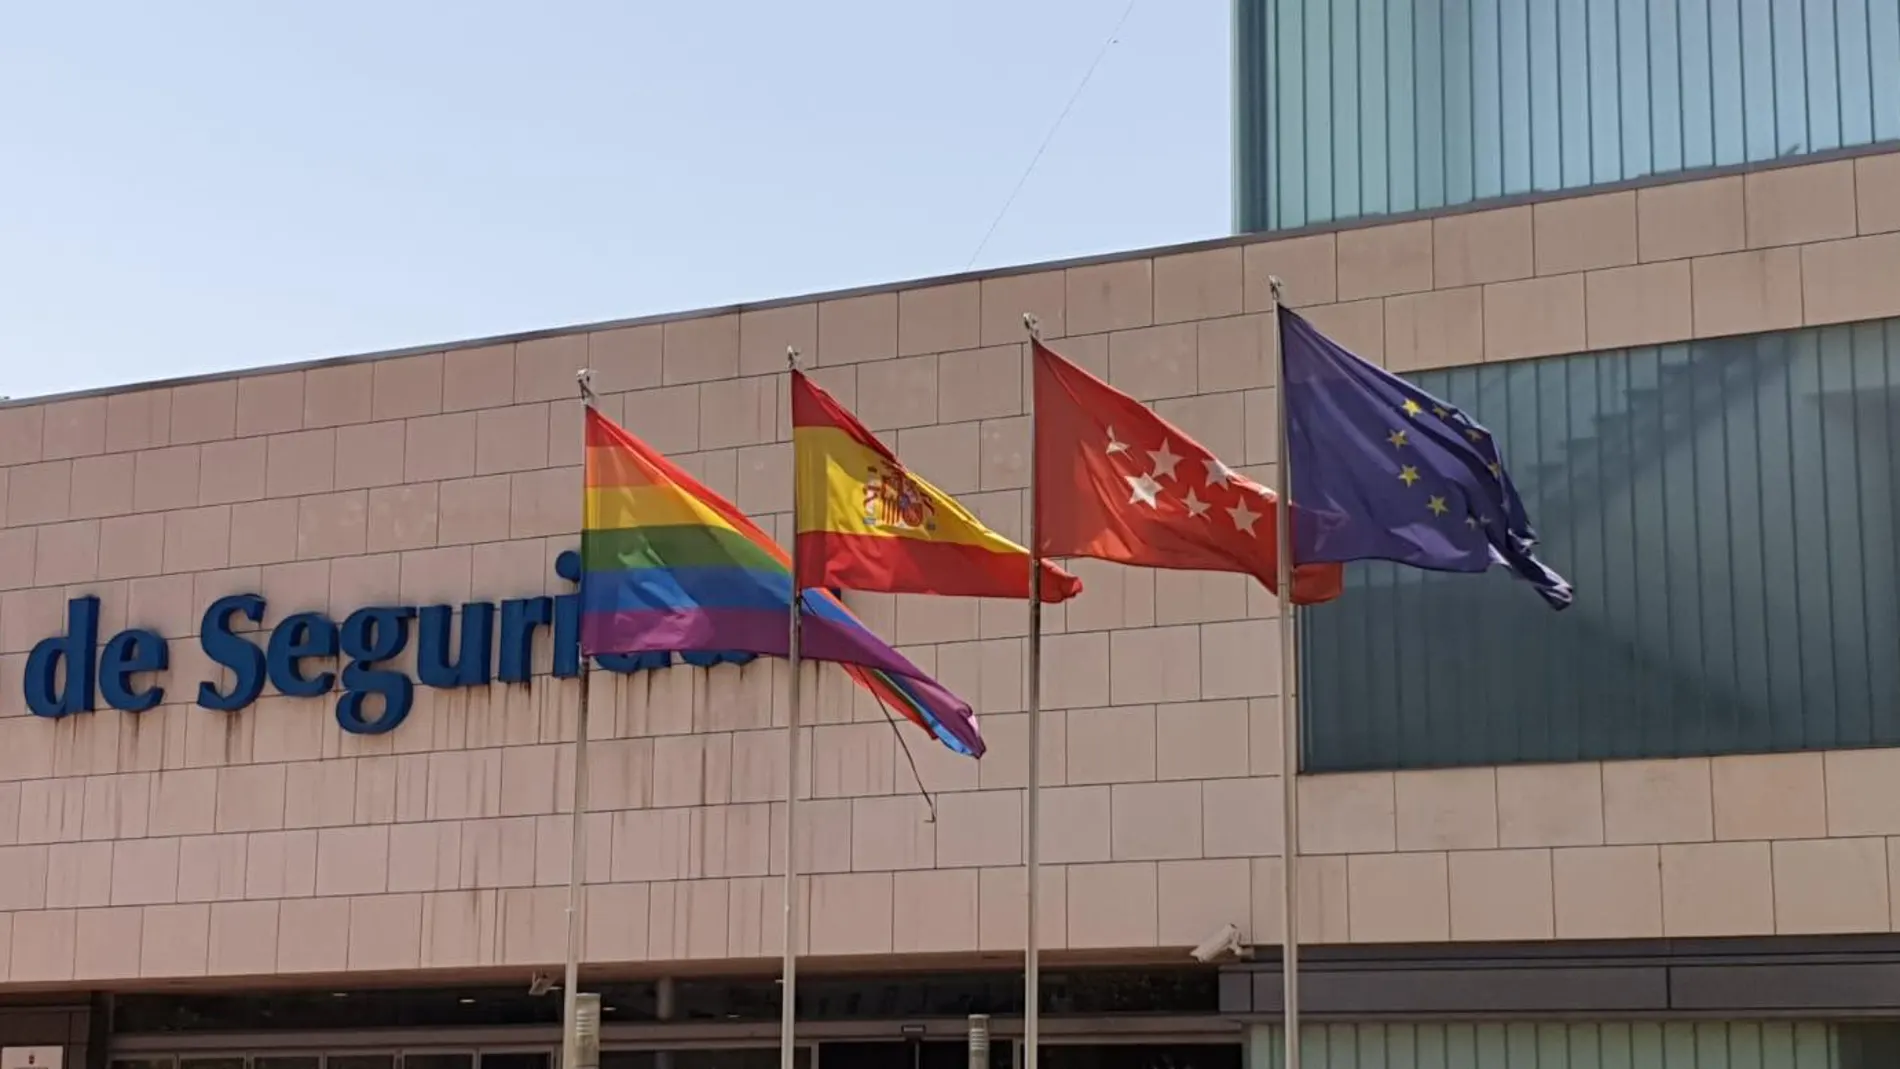 La bandera del Orgullo ondea en el Centro de Seguridad de Alcorcón y se ha retirado la de Alcorcón